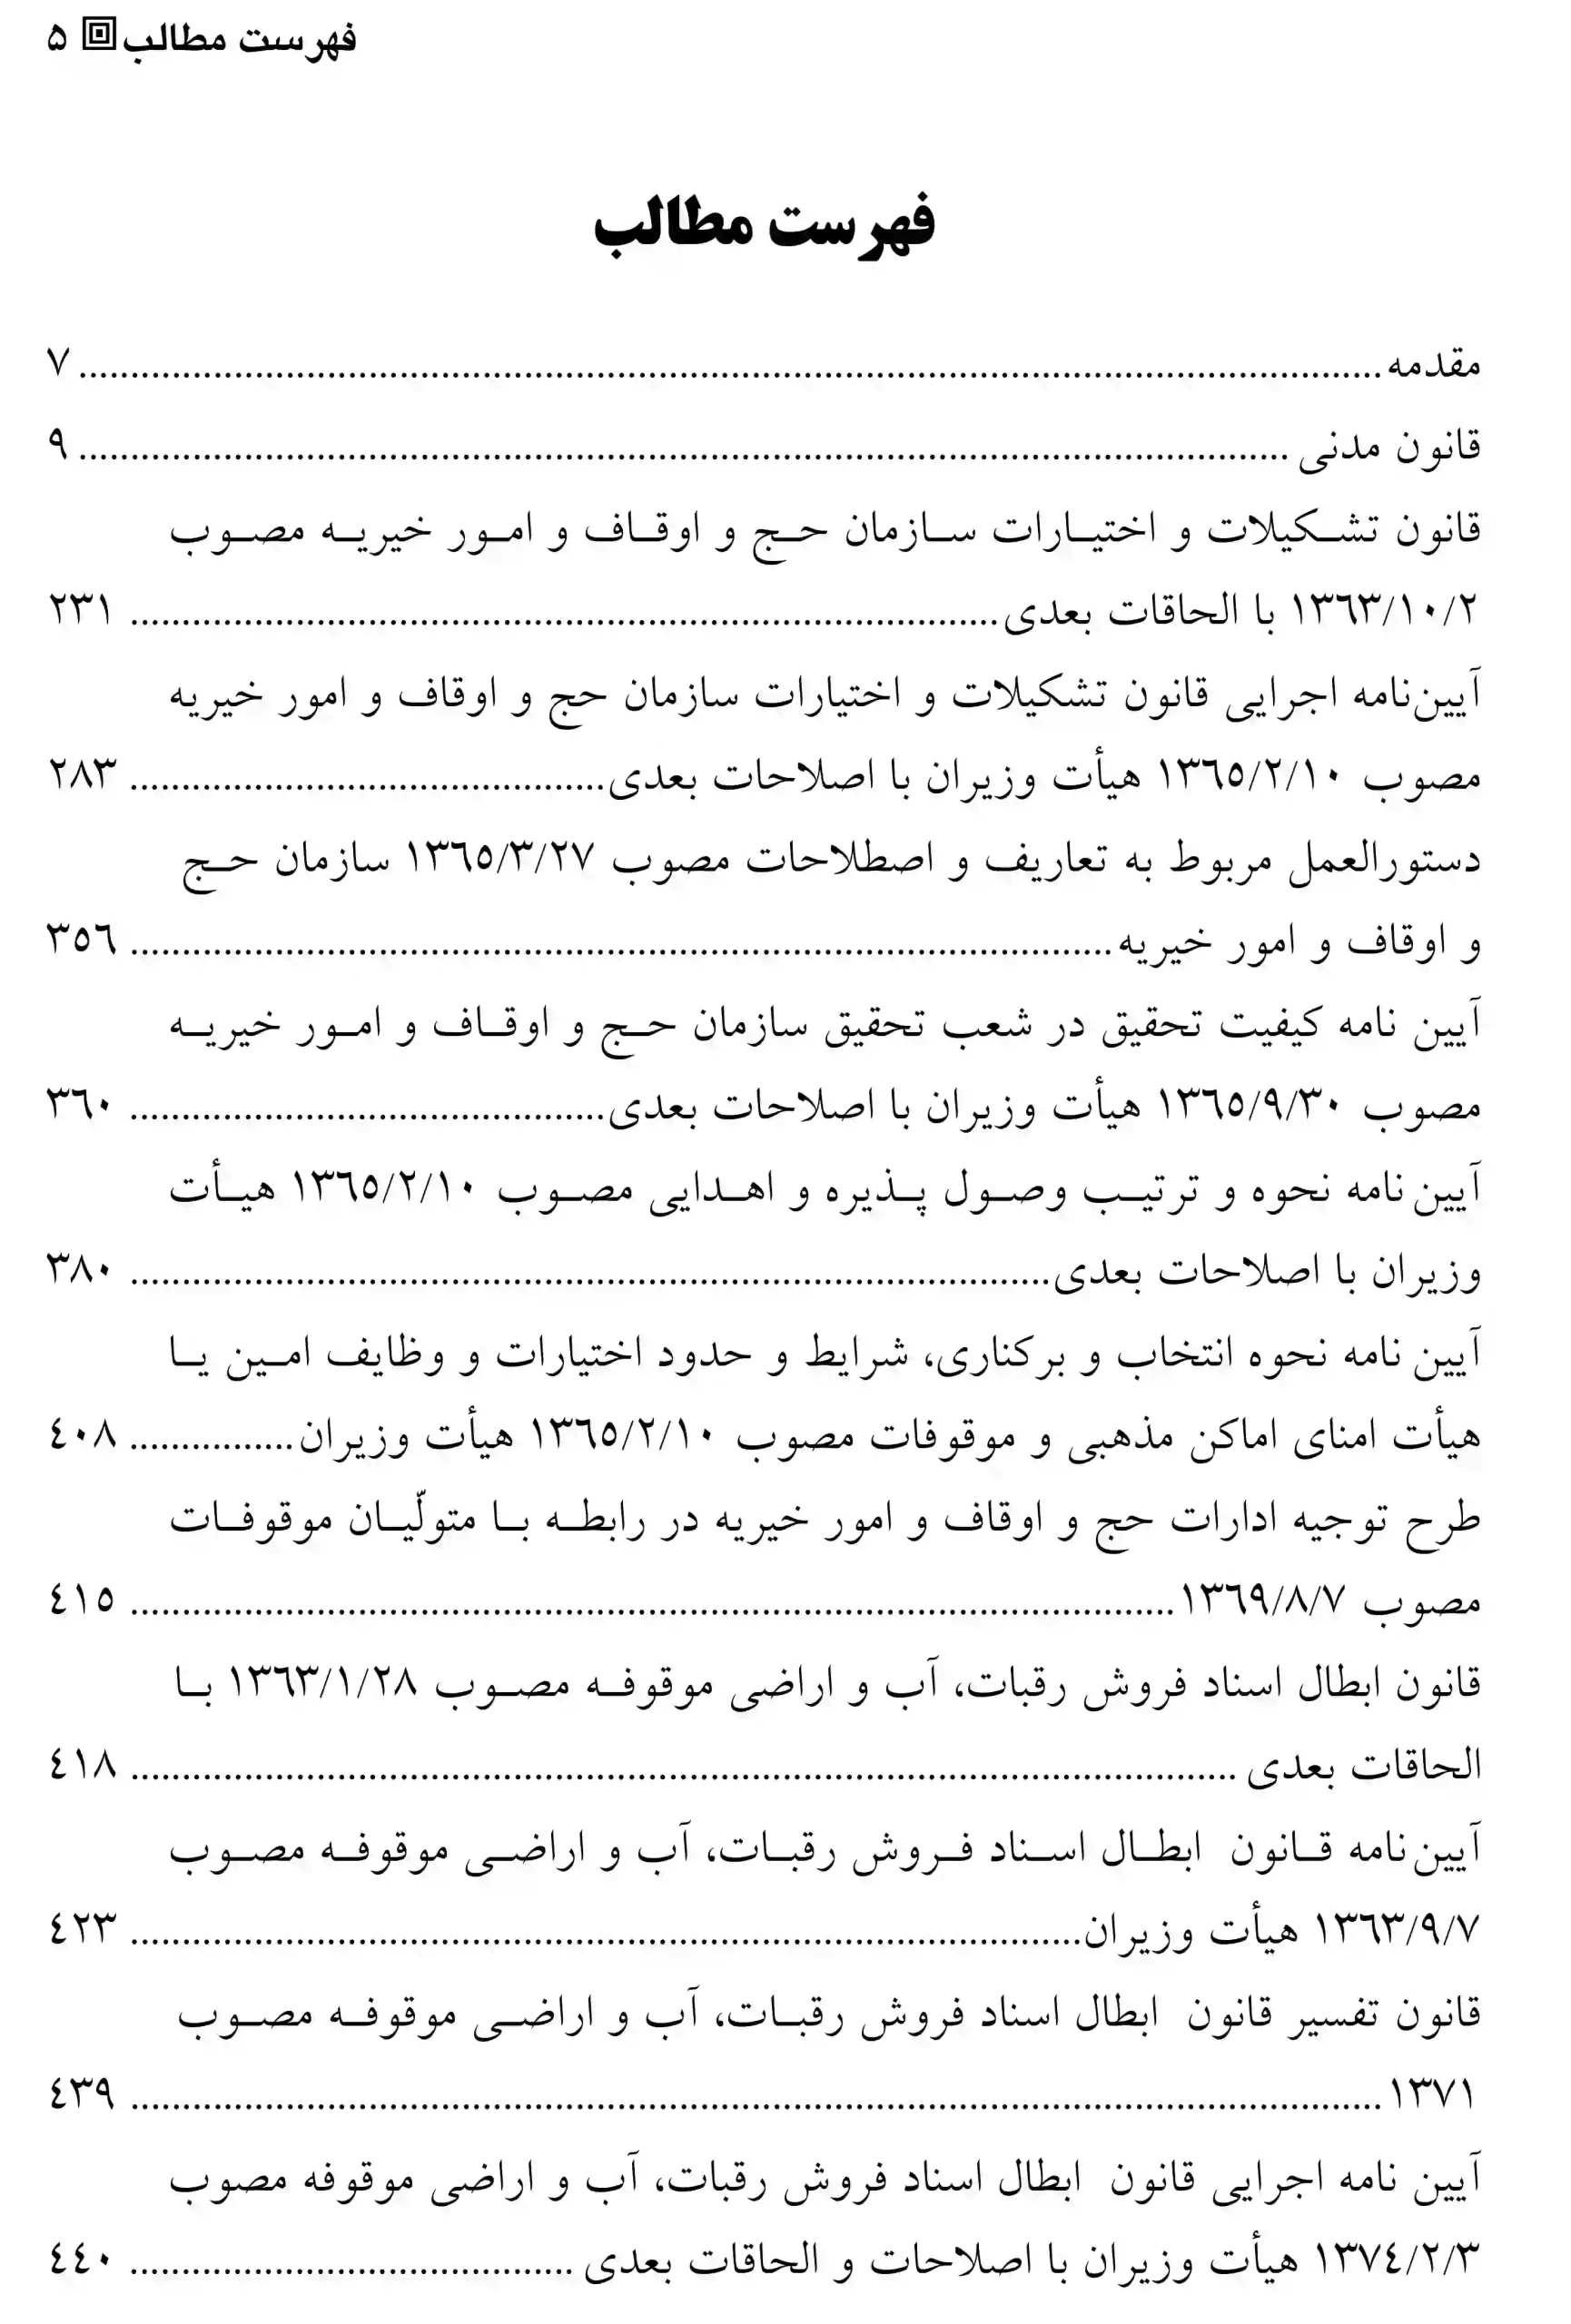 رویه های قضایی حاکم بر مقررات وقف محمد رضا حسینی